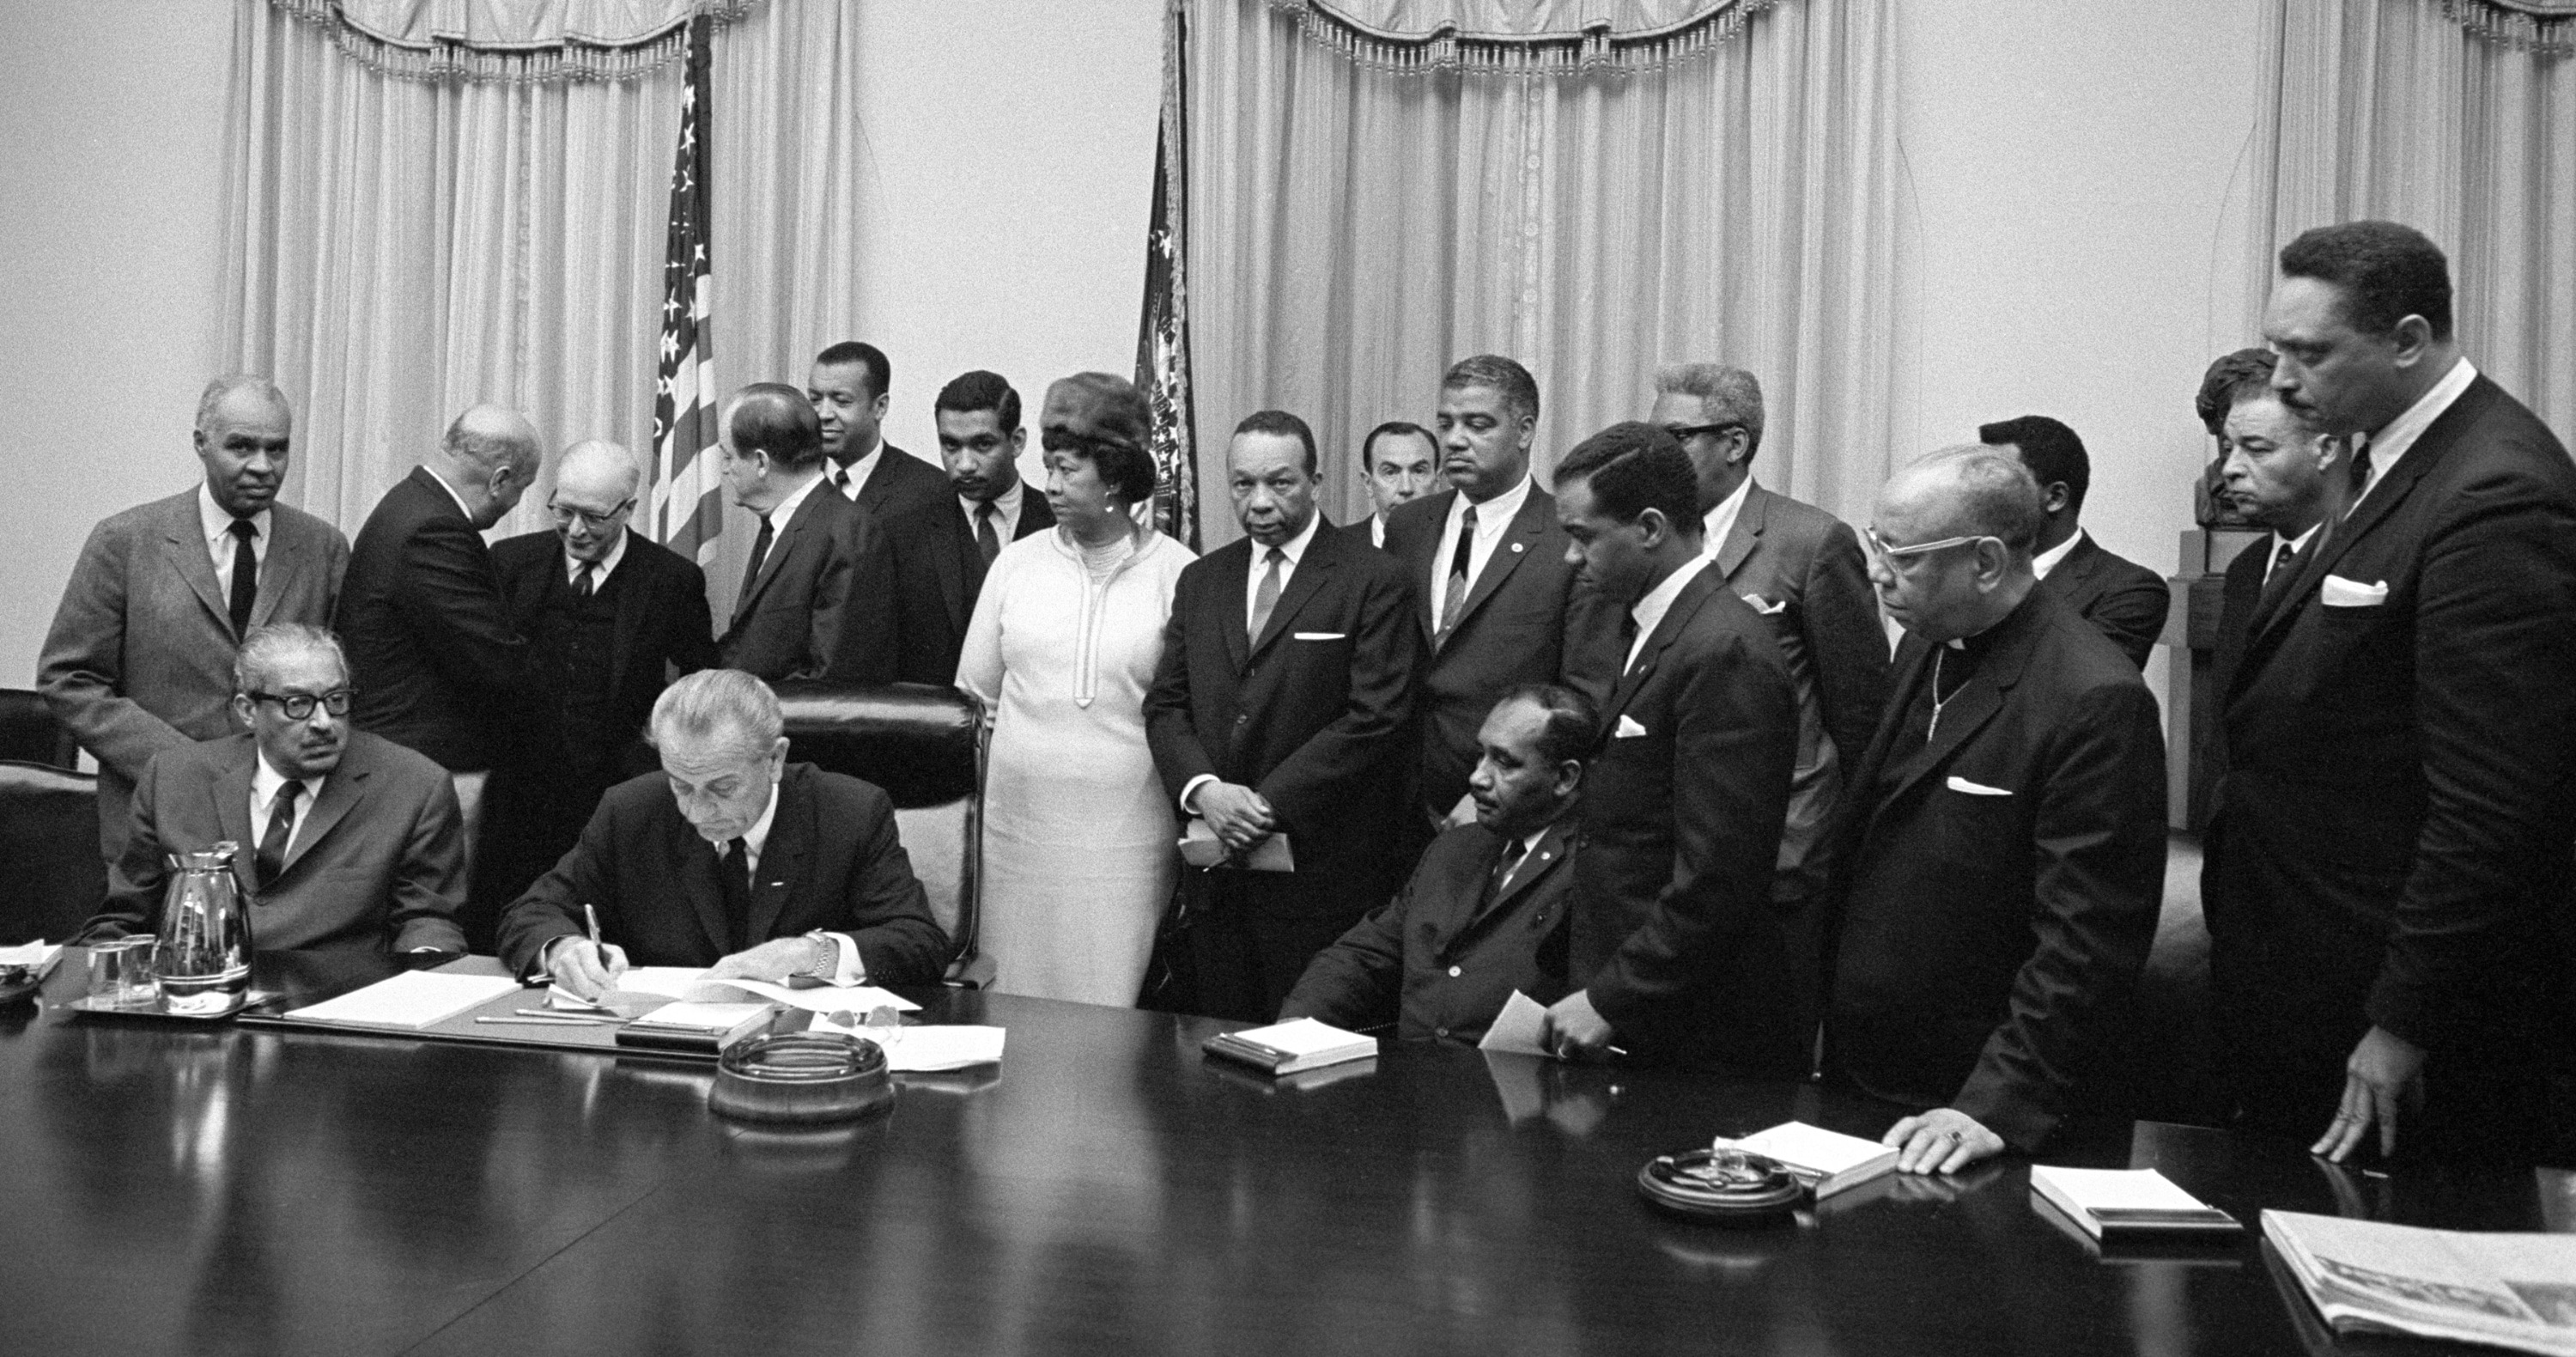 Il presidente Lyndon Johnson incontra i leader del movimento per la lotta ai diritti civili subito dopo la morte di Martin Luther King. Rimane famoso il suo intervento in televisione subito dopo l’omicidio per cercare di bloccare gli atti violenti scoppiati in tutto il paese